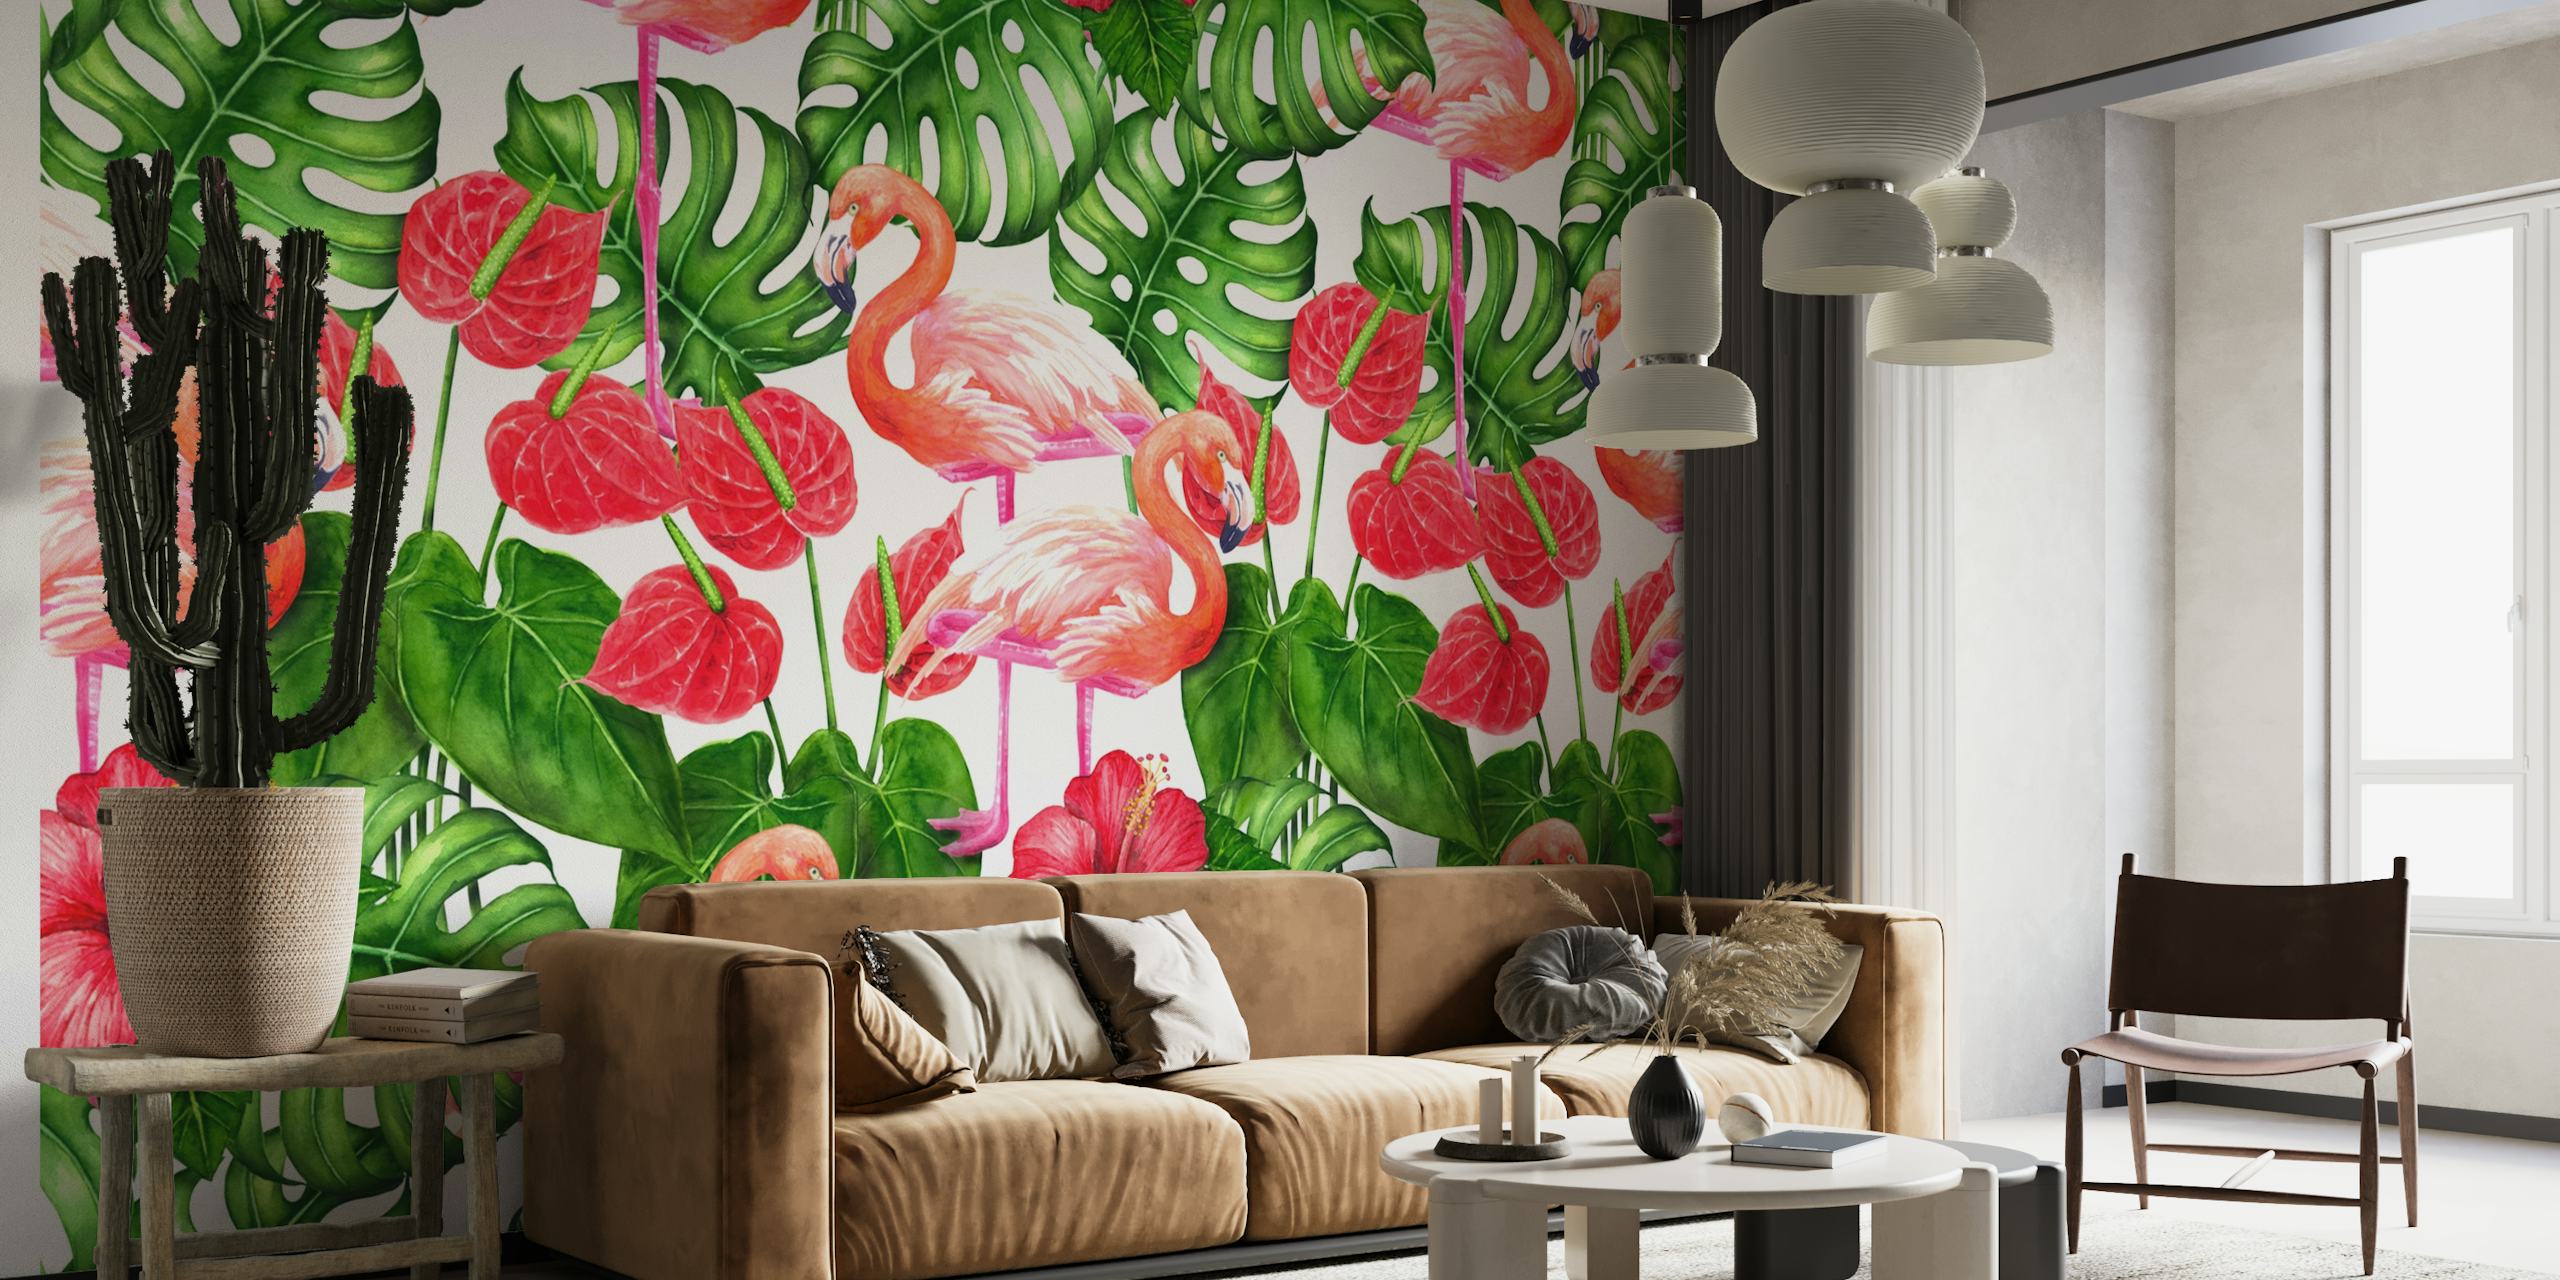 Flamingo and tropical garden 3 behang